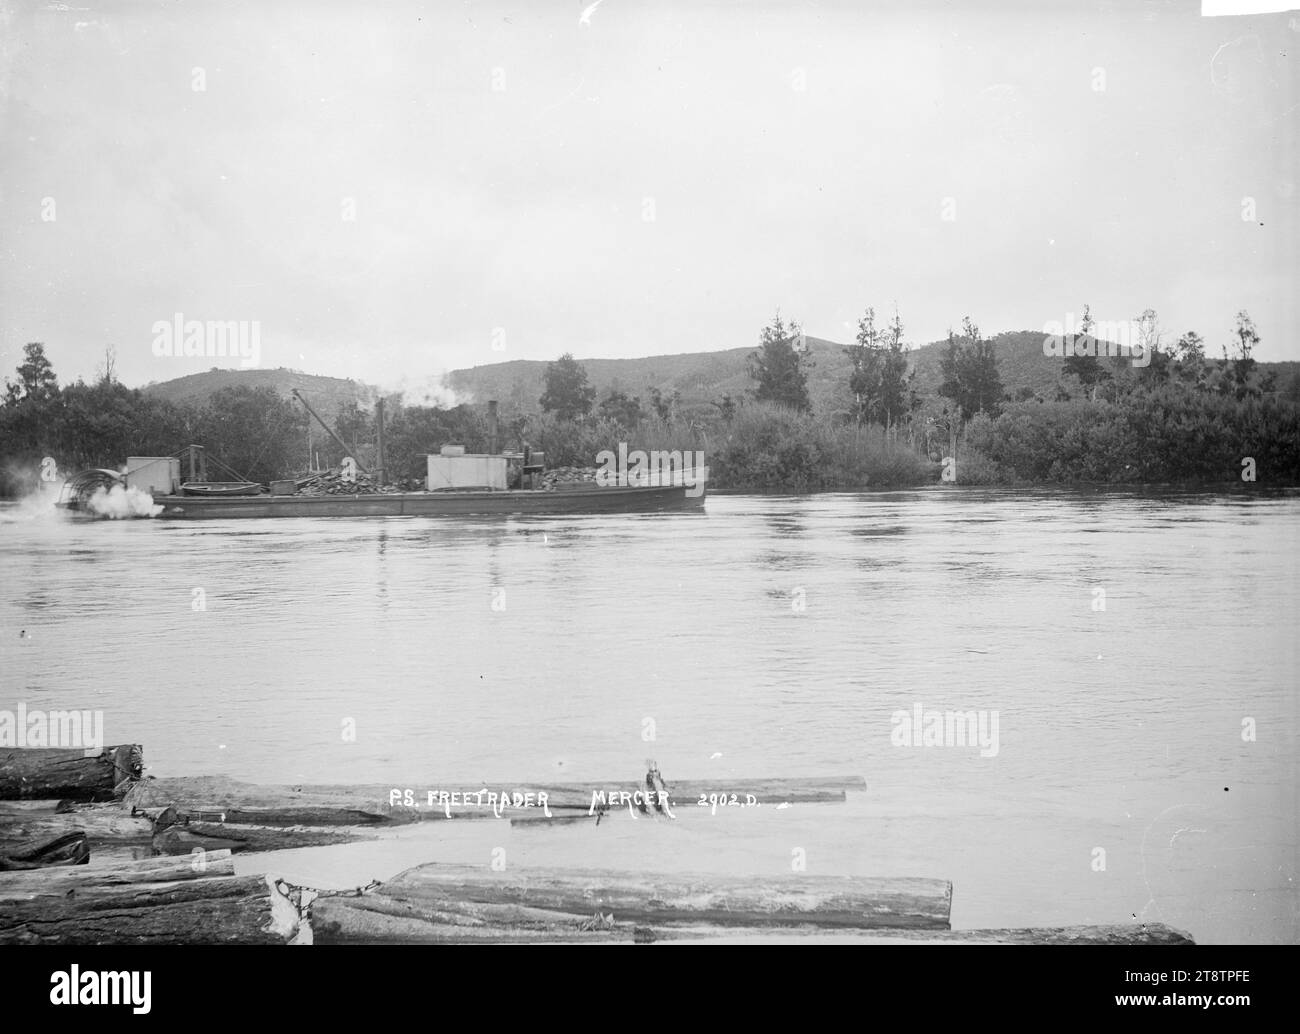 Paddeldampfer Freetrader auf dem Waikato River in der Nähe von Mercer, Blick auf den Paddeldampfer Freetrader auf dem Waikato River in der Nähe von Mercer. Baumstämme schwimmen im Fluss im Vordergrund. Anfang der 1900er Jahre Stockfoto